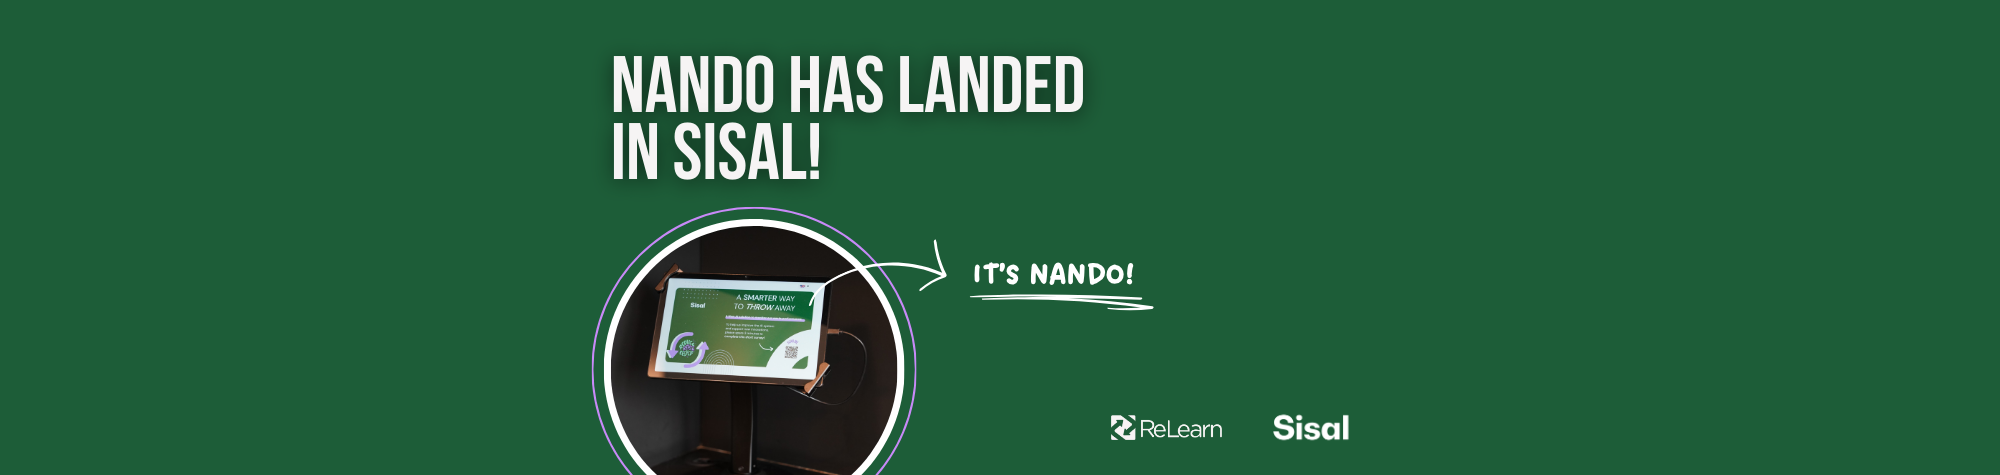 NANDO has landed in Sisal!